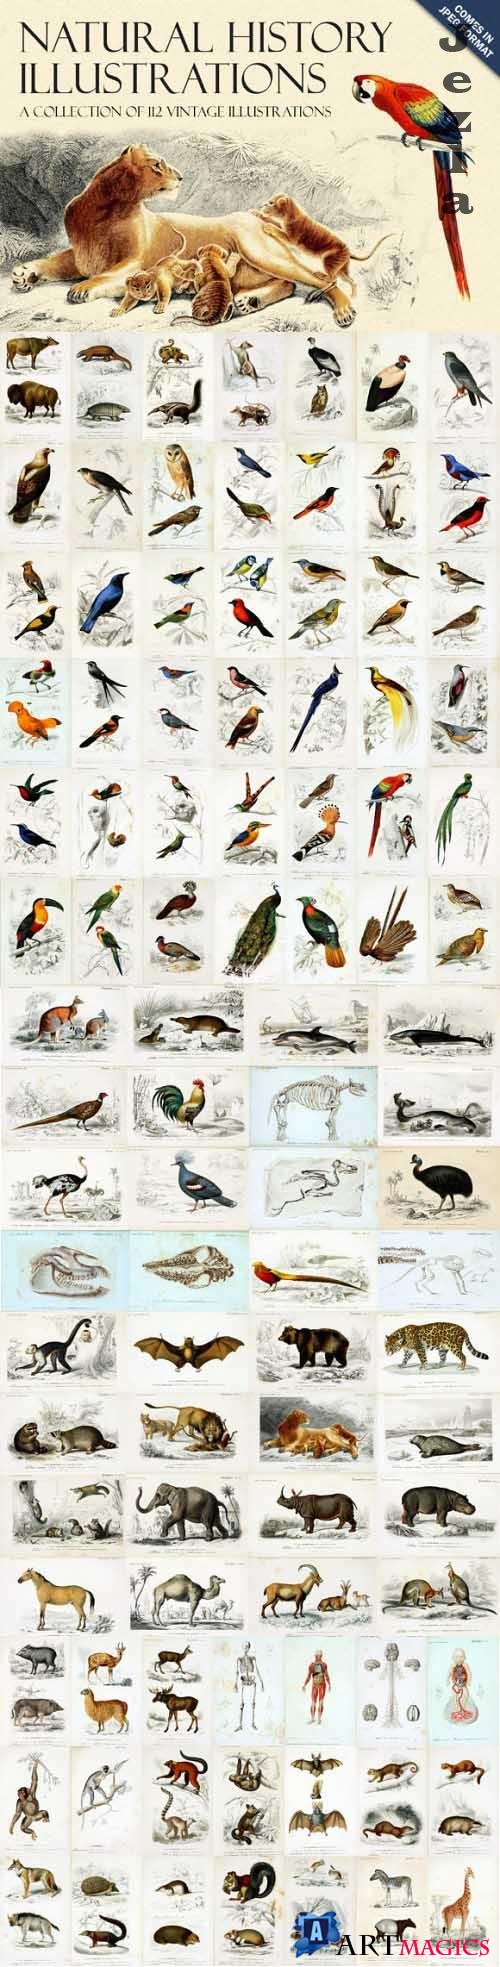 Natural History Illustrations